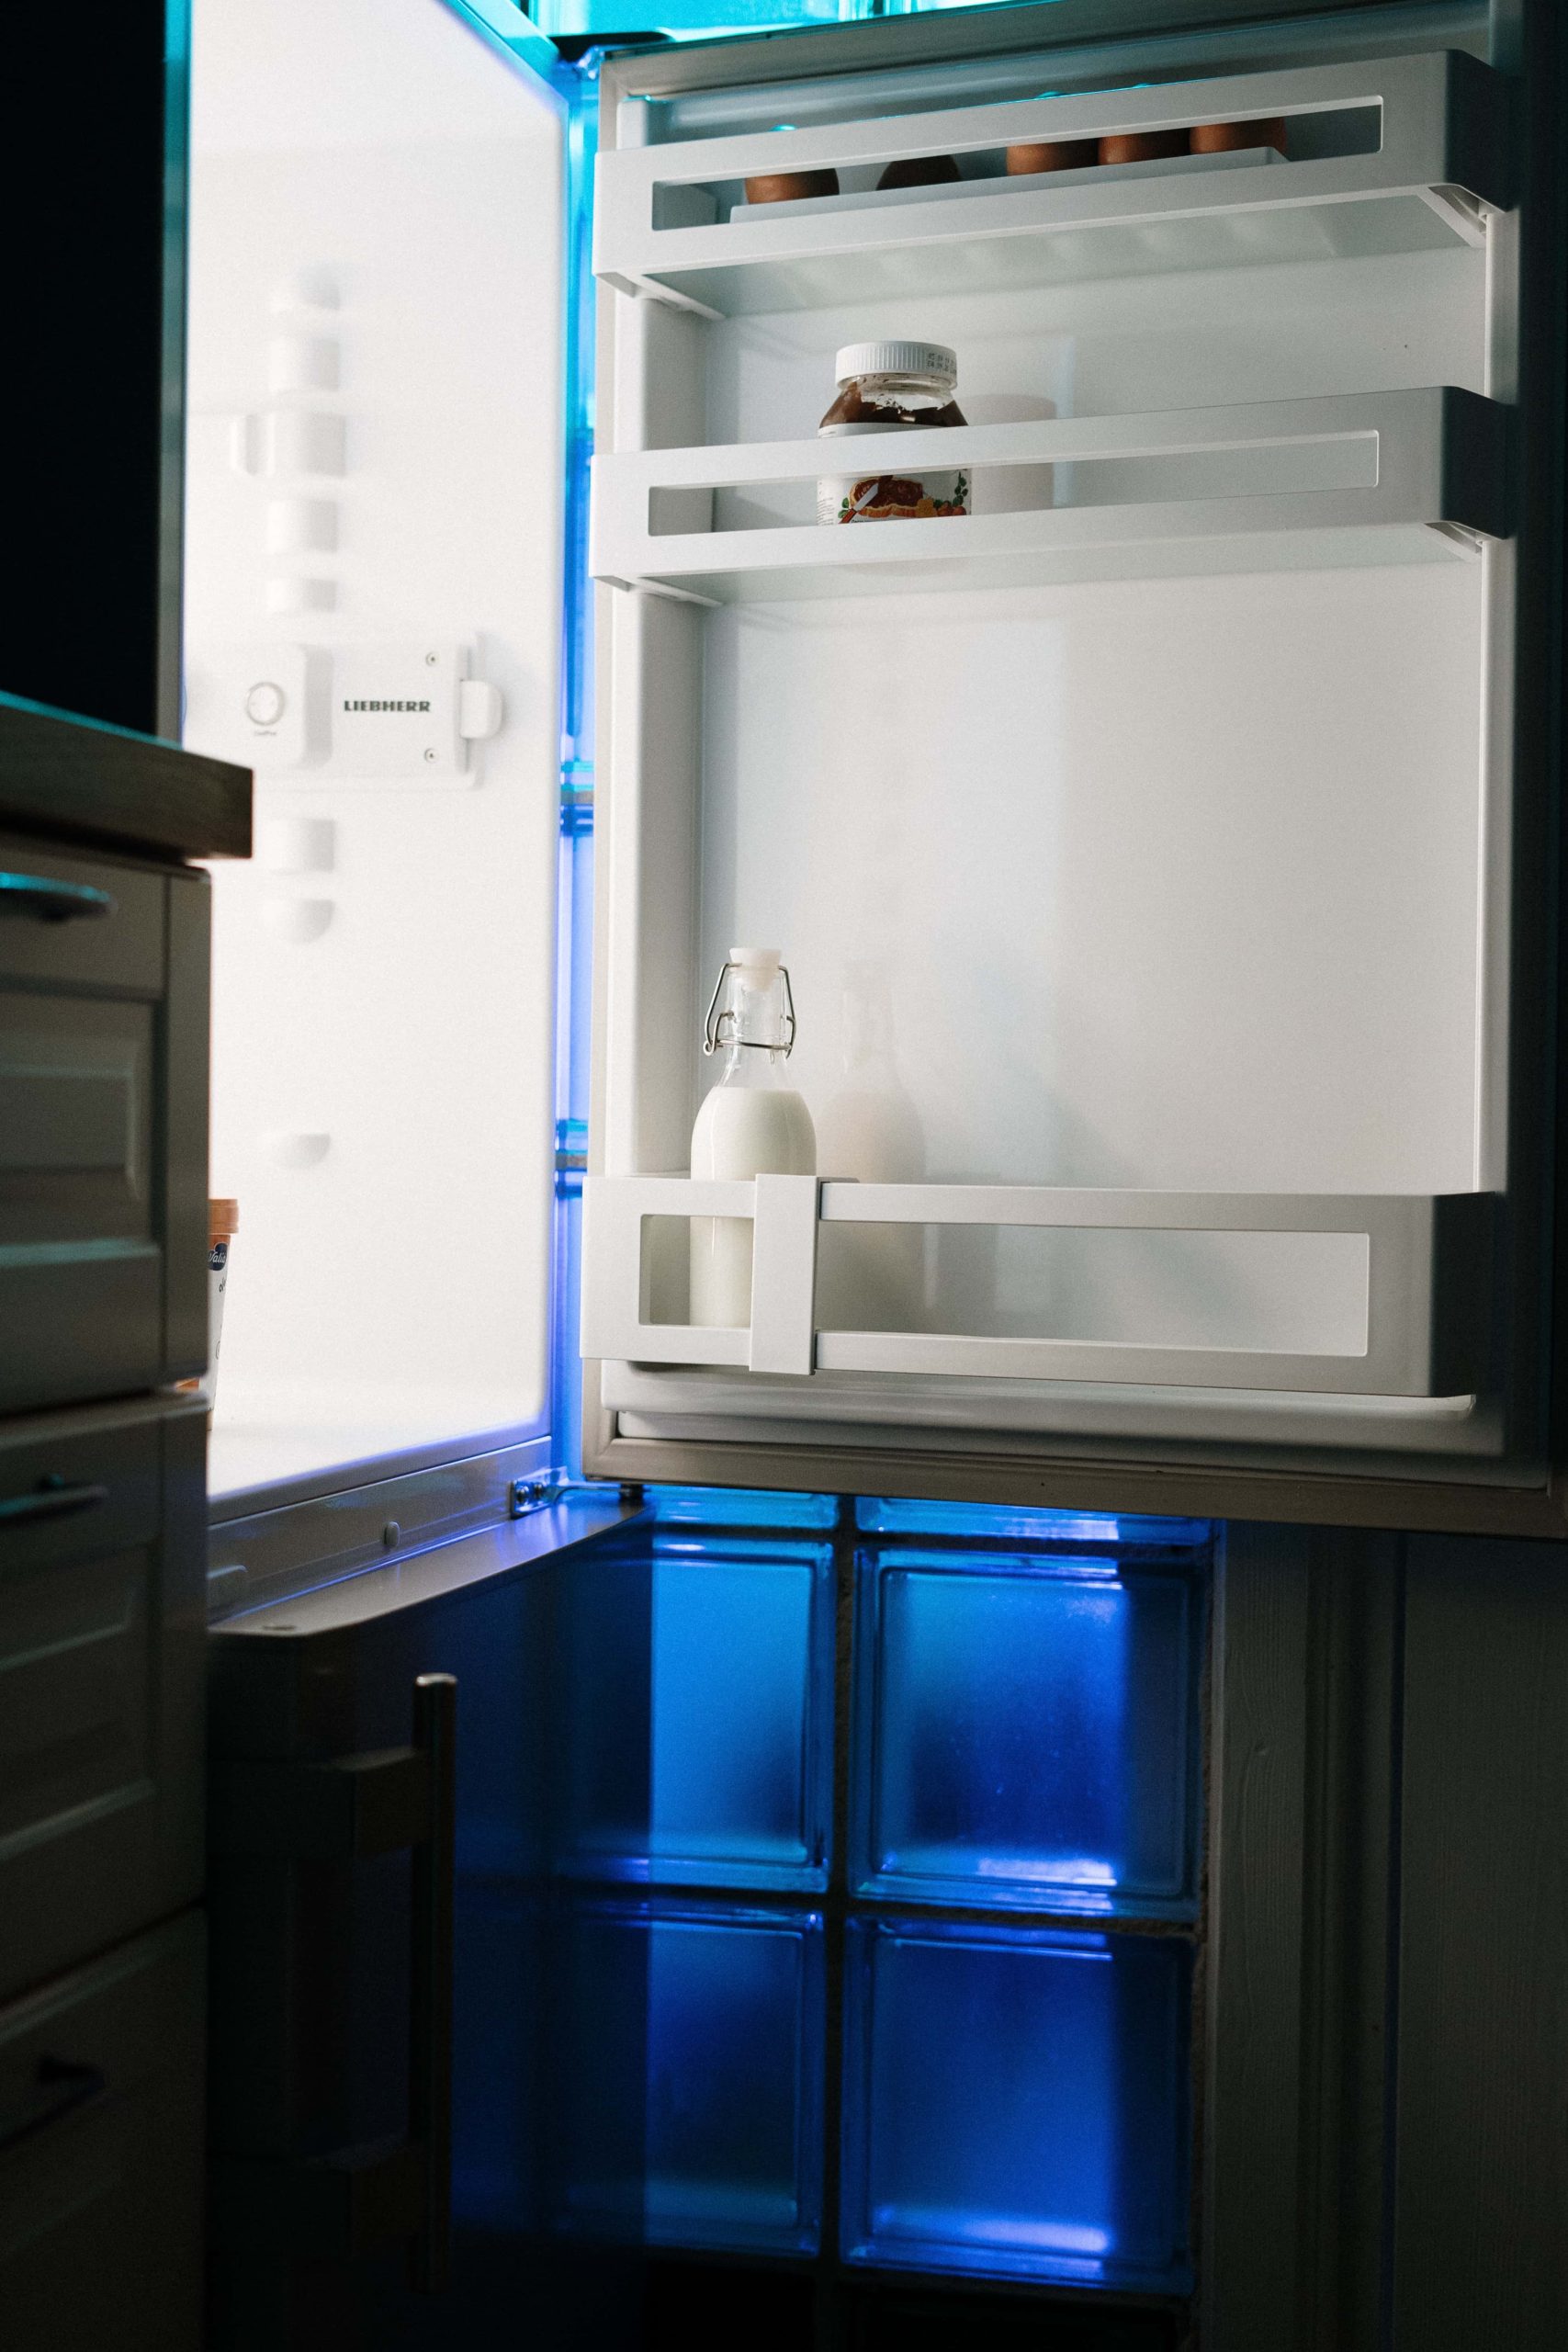 Najnowsze urządzenia chłodnicze – ile kosztują i w co warto zainwestować?